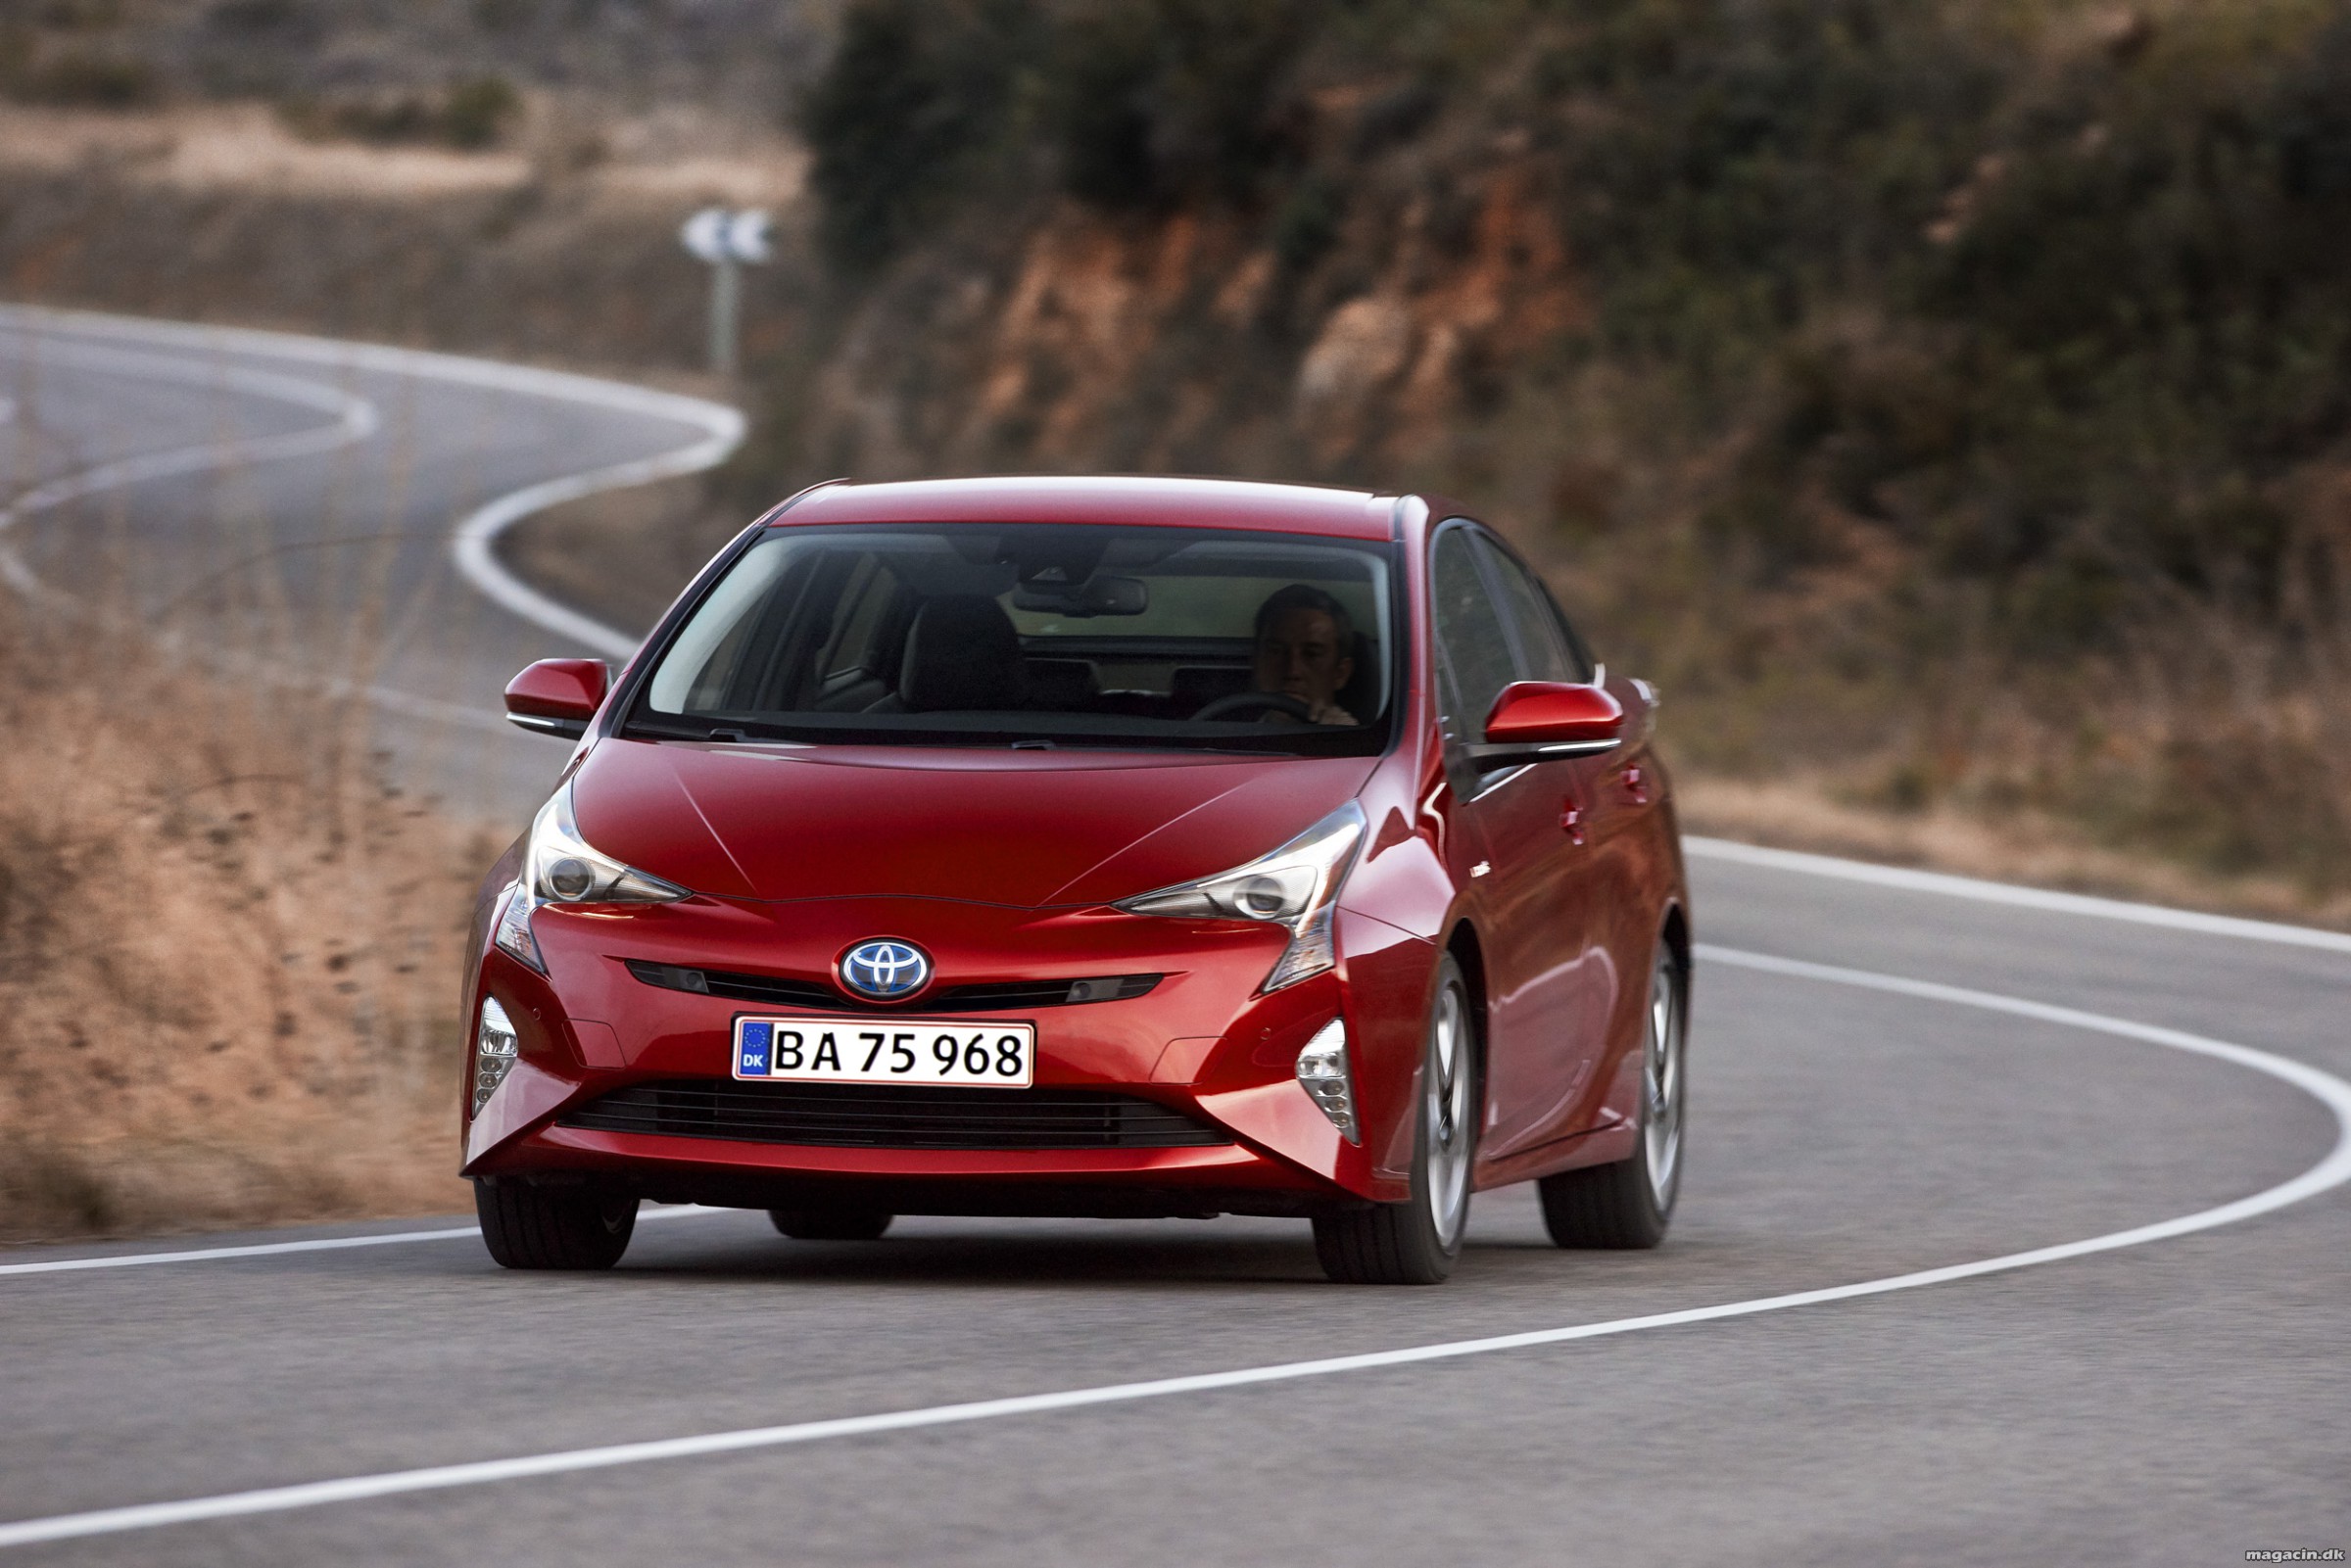 Ny Toyota Prius helt i top i sikkerhedstest